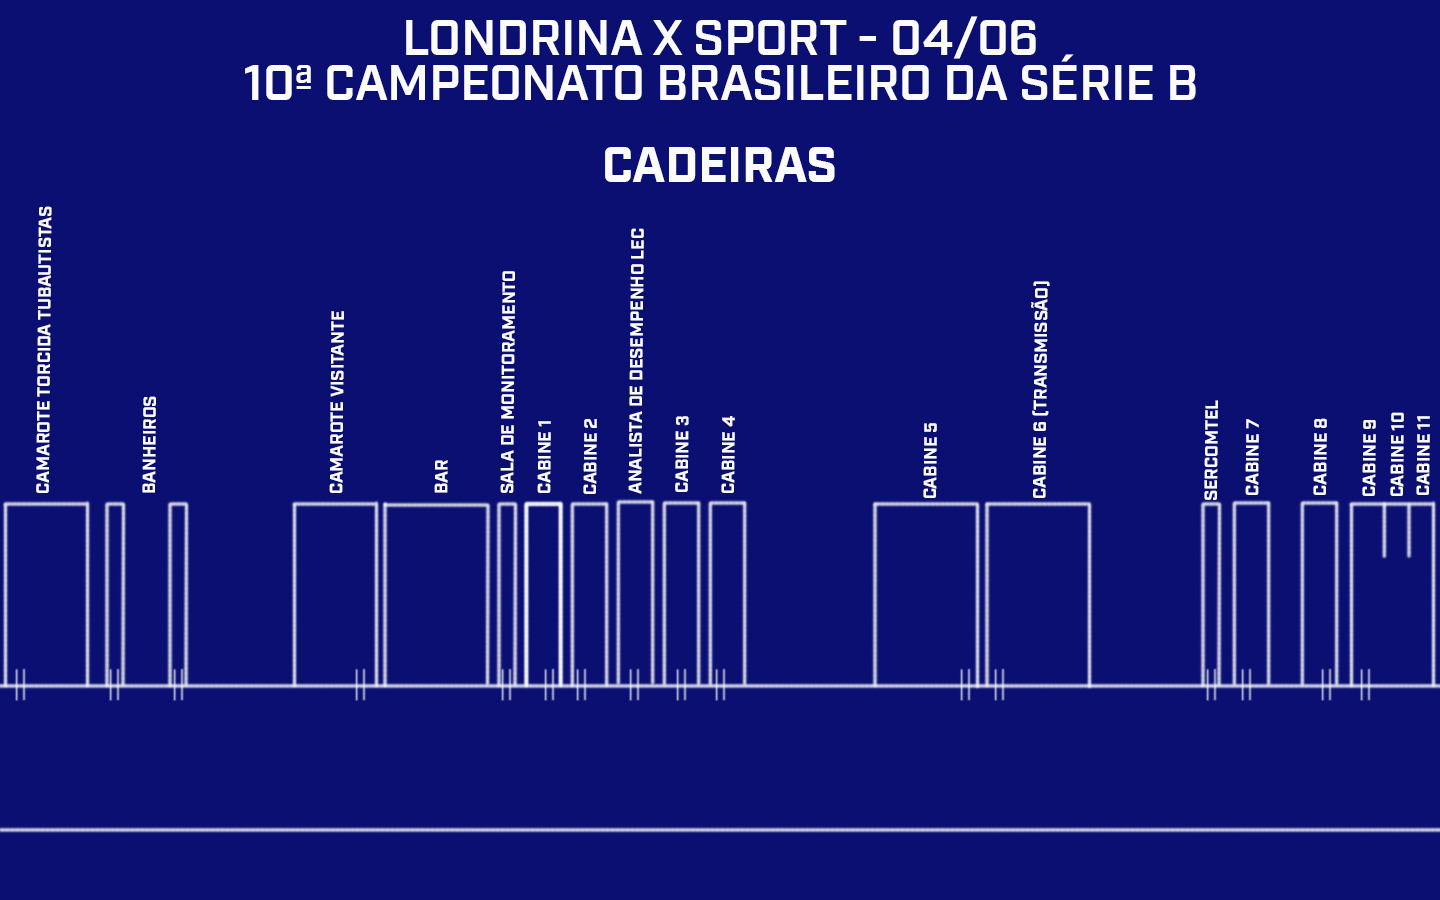 Credenciamento do Estádio do Café | Londrina x Sport - 10ª rodada do Campeonato Brasileiro da Série B